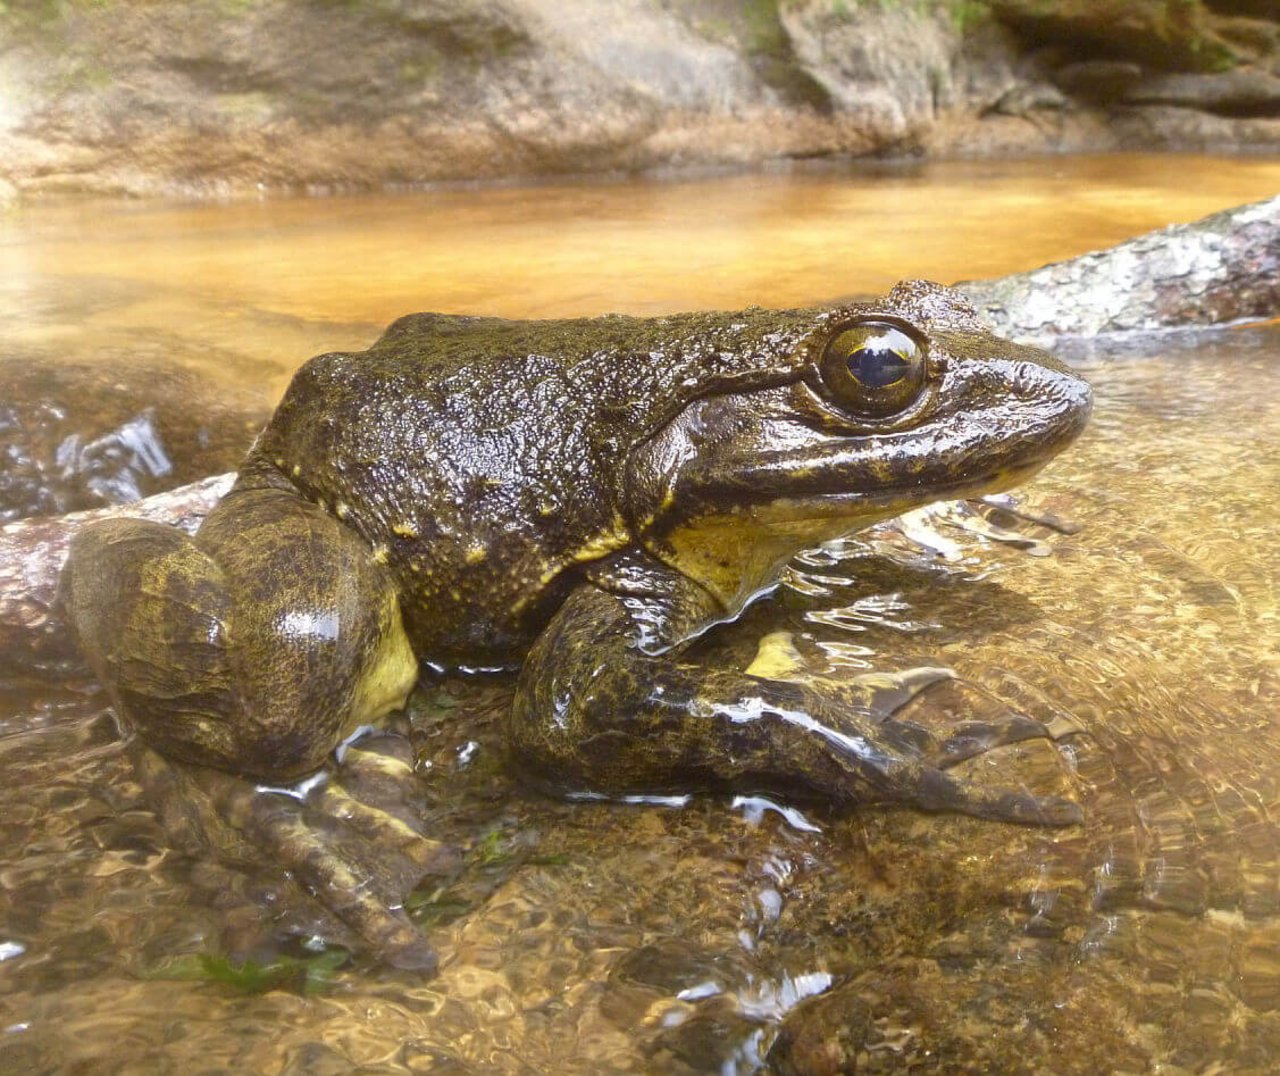 Der Goliath-Frosch erreicht beeindruckende 3.3 kg Körpermasse, wie Frogs and Friends schreibt. (Bild Frogs and Friends)